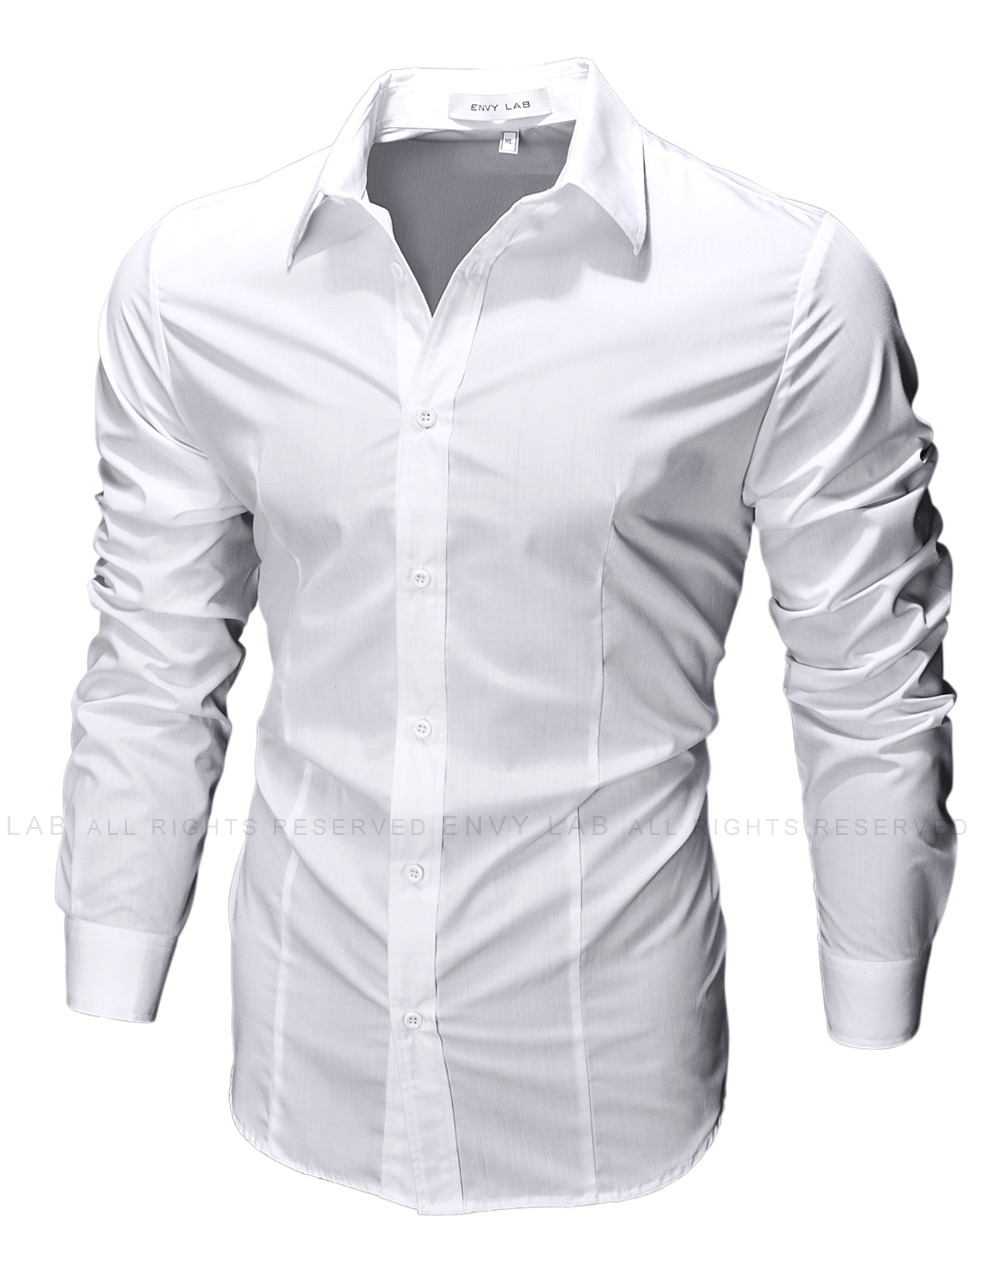 картинка товара рубашка raw white в магазине Envy LAB